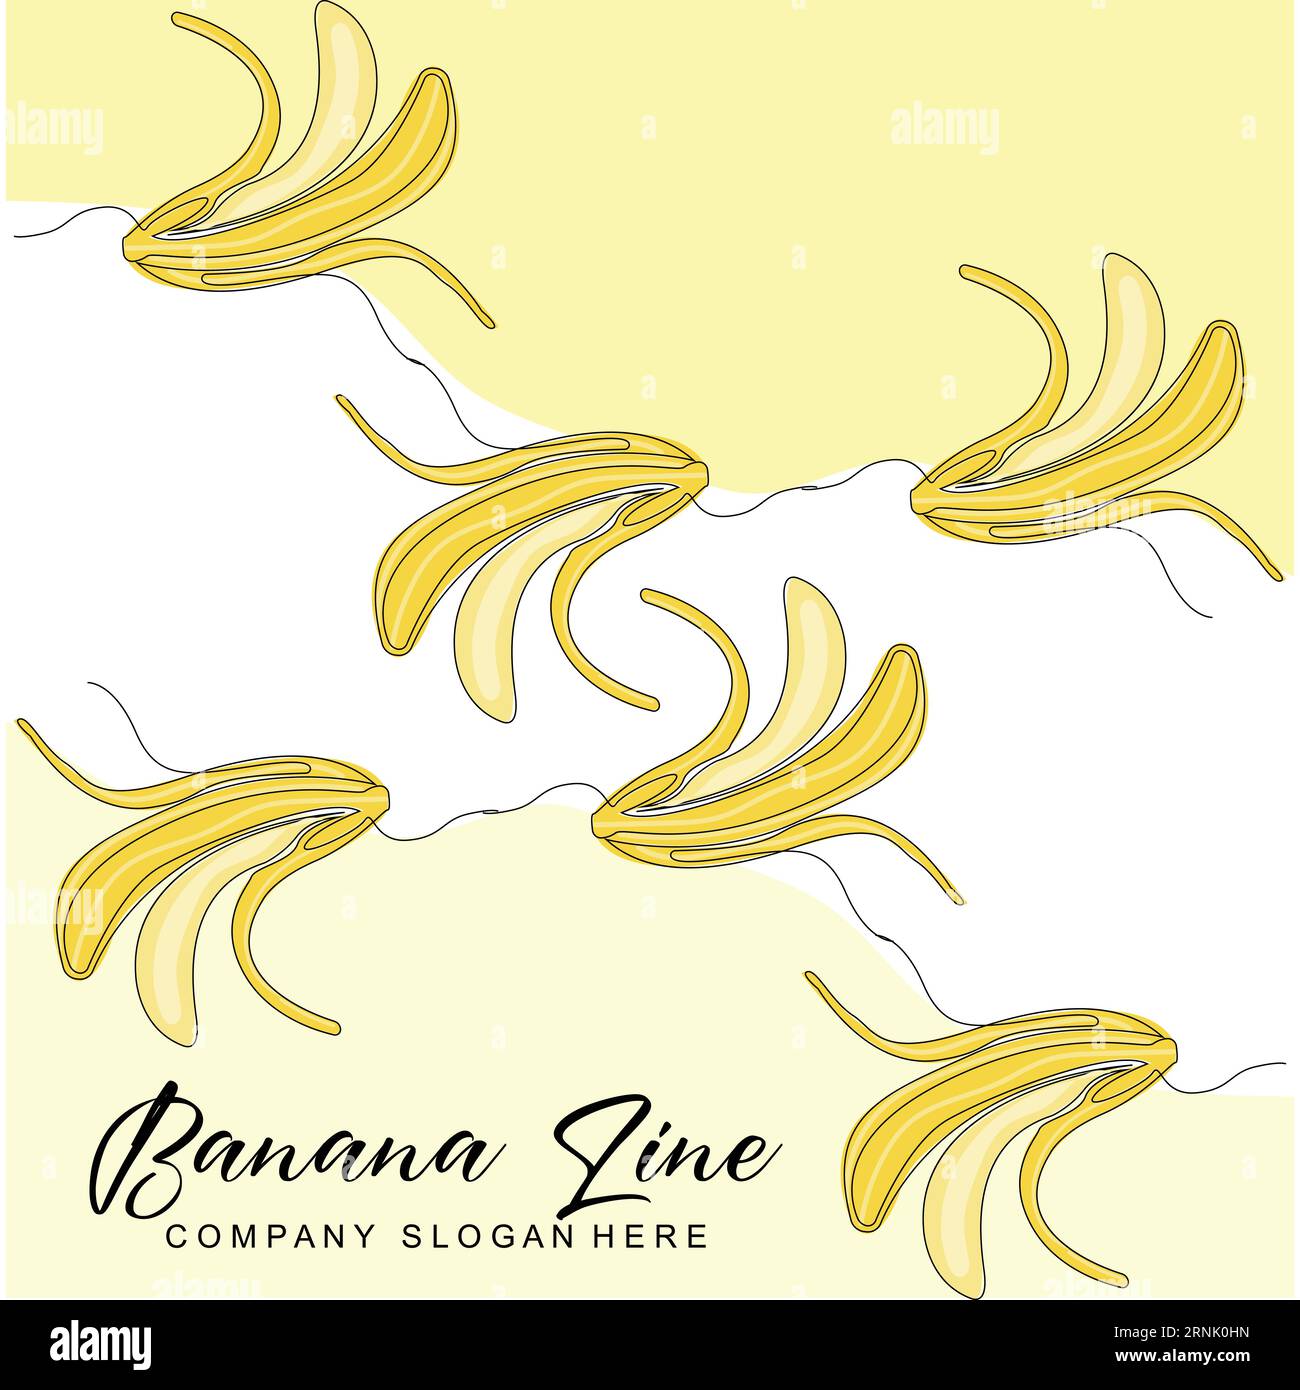 Logo banana, vettoriale frutta con stile grafico della linea, illustrazione della carta del marchio del prodotto Illustrazione Vettoriale